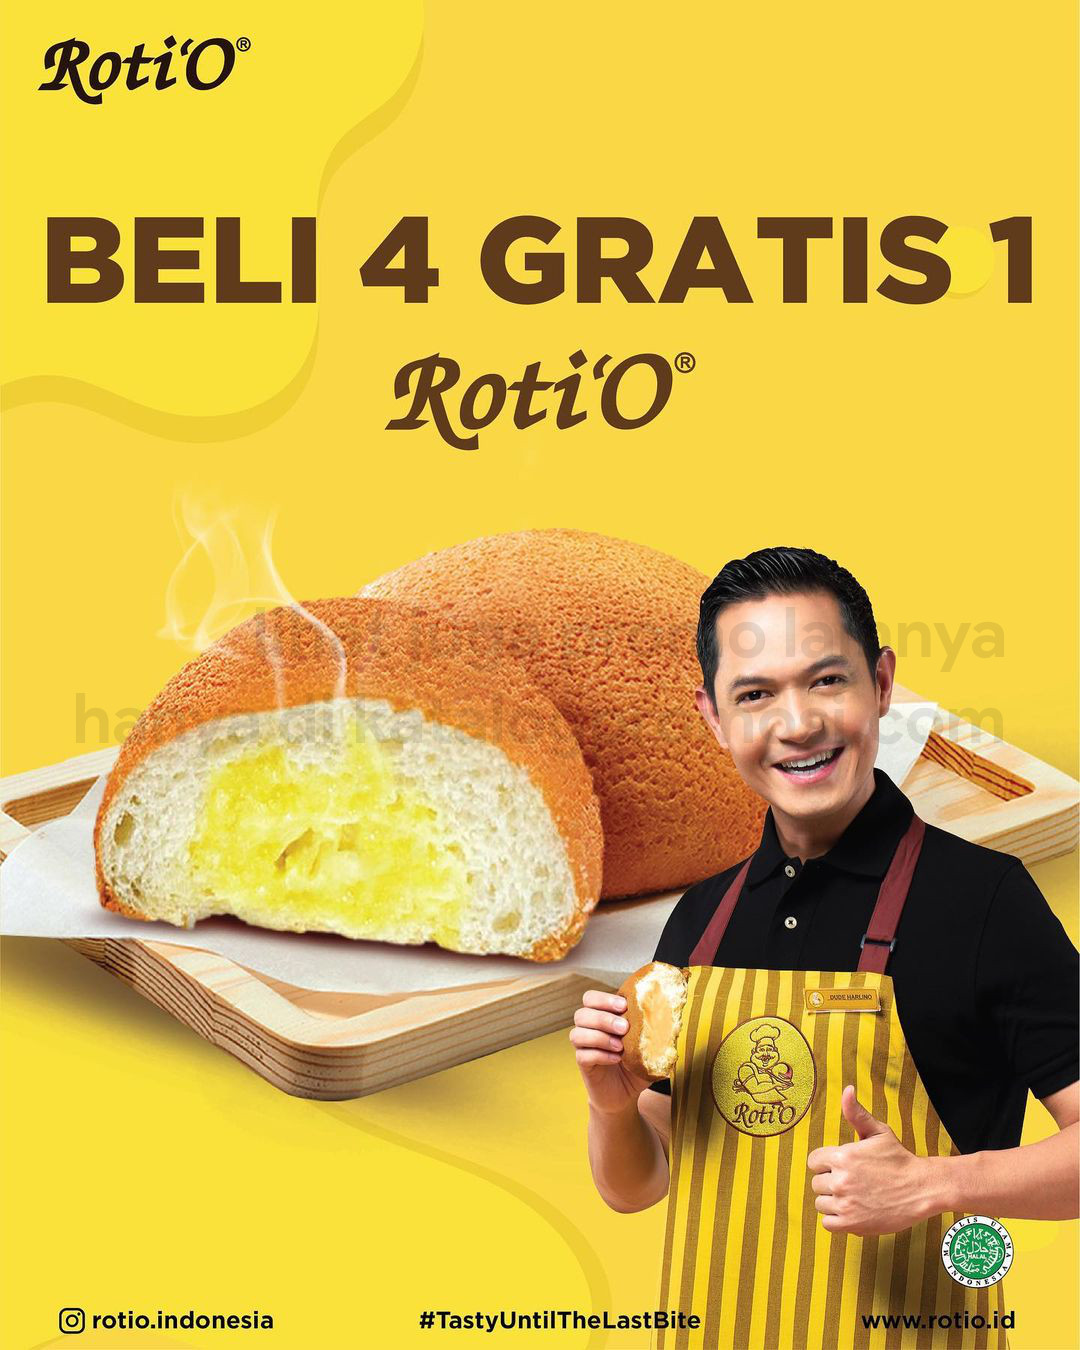 Promo ROTI'O - BELI 4 GRATIS 1 untuk ROTI dan HARGA SPESIAL untuk KOPI'O